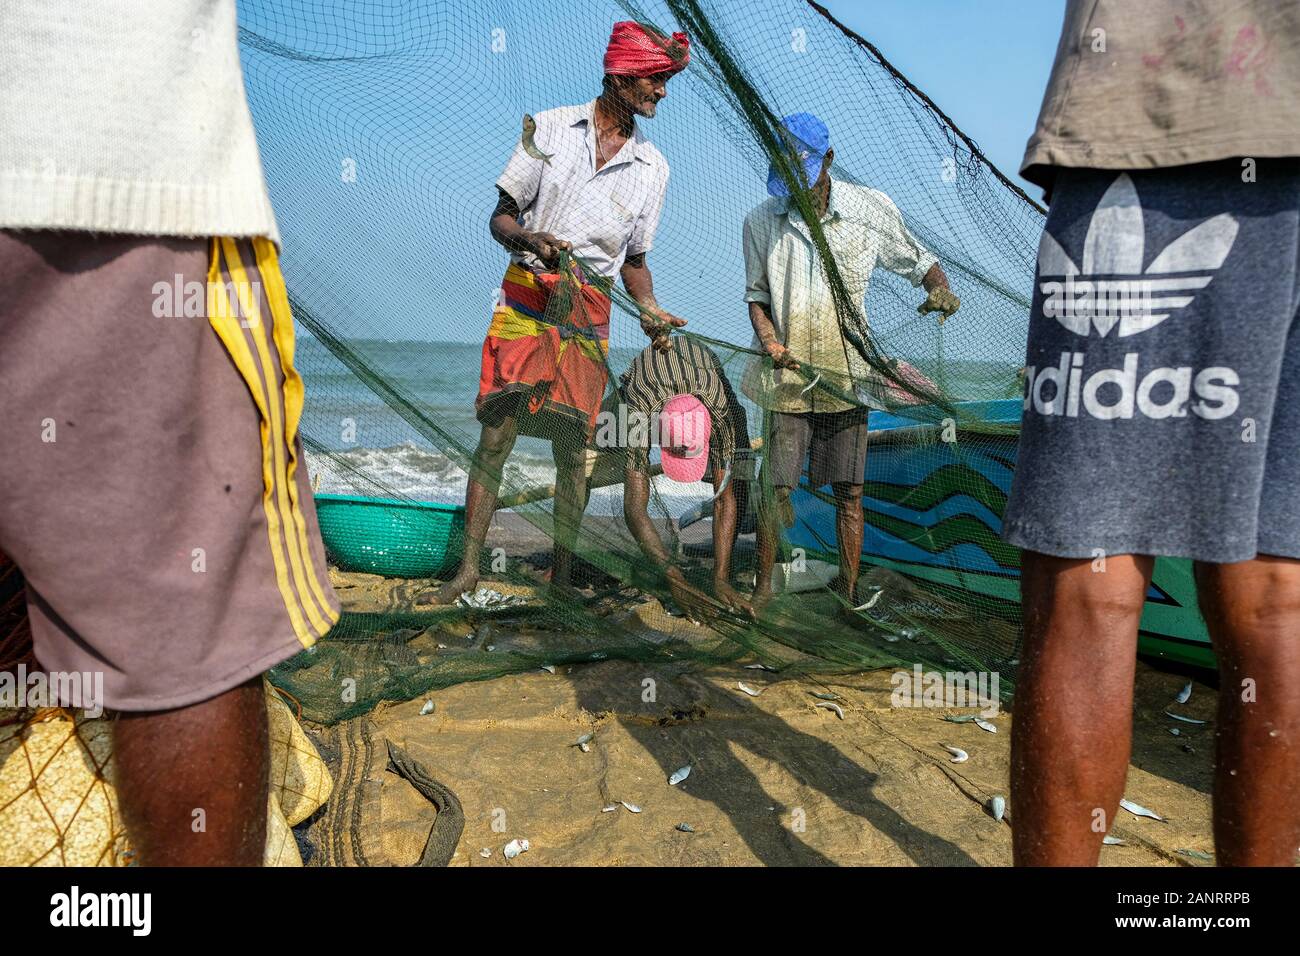 Negombo, Sri Lanka - enero de 2020: Los pescadores recogen pescado de sus redes de pesca después de una noche de pesca el 12 de enero de 2020 en Negombo, Sri Lanka. Foto de stock